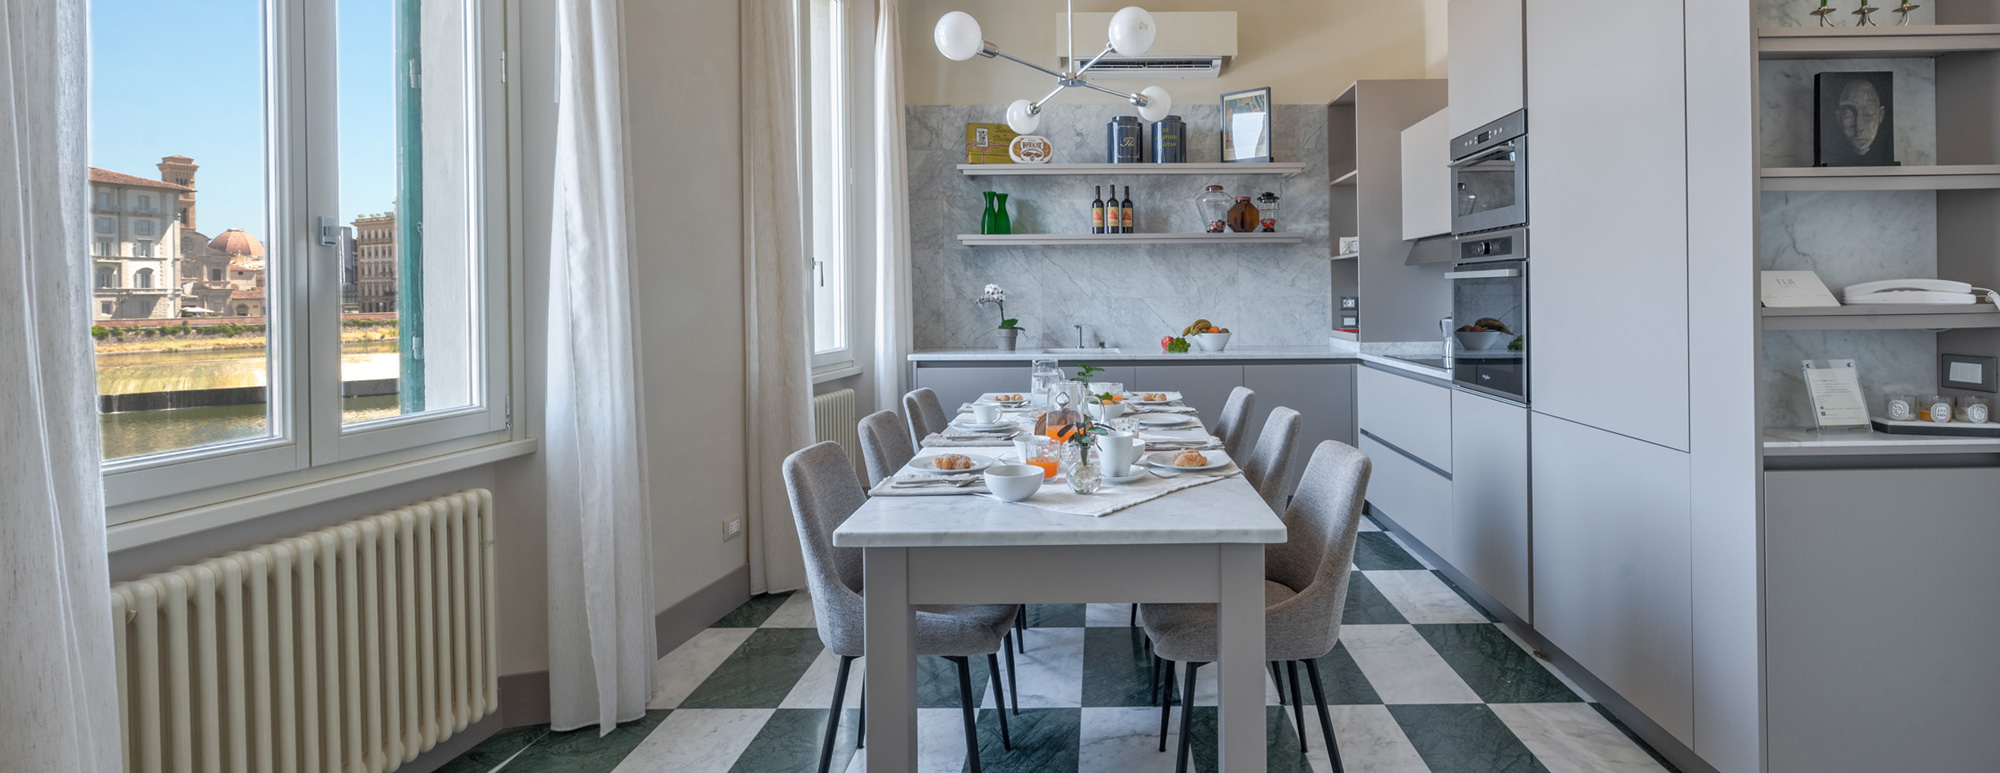 Modern kitchen area of the La Casa sull'Arno apartment